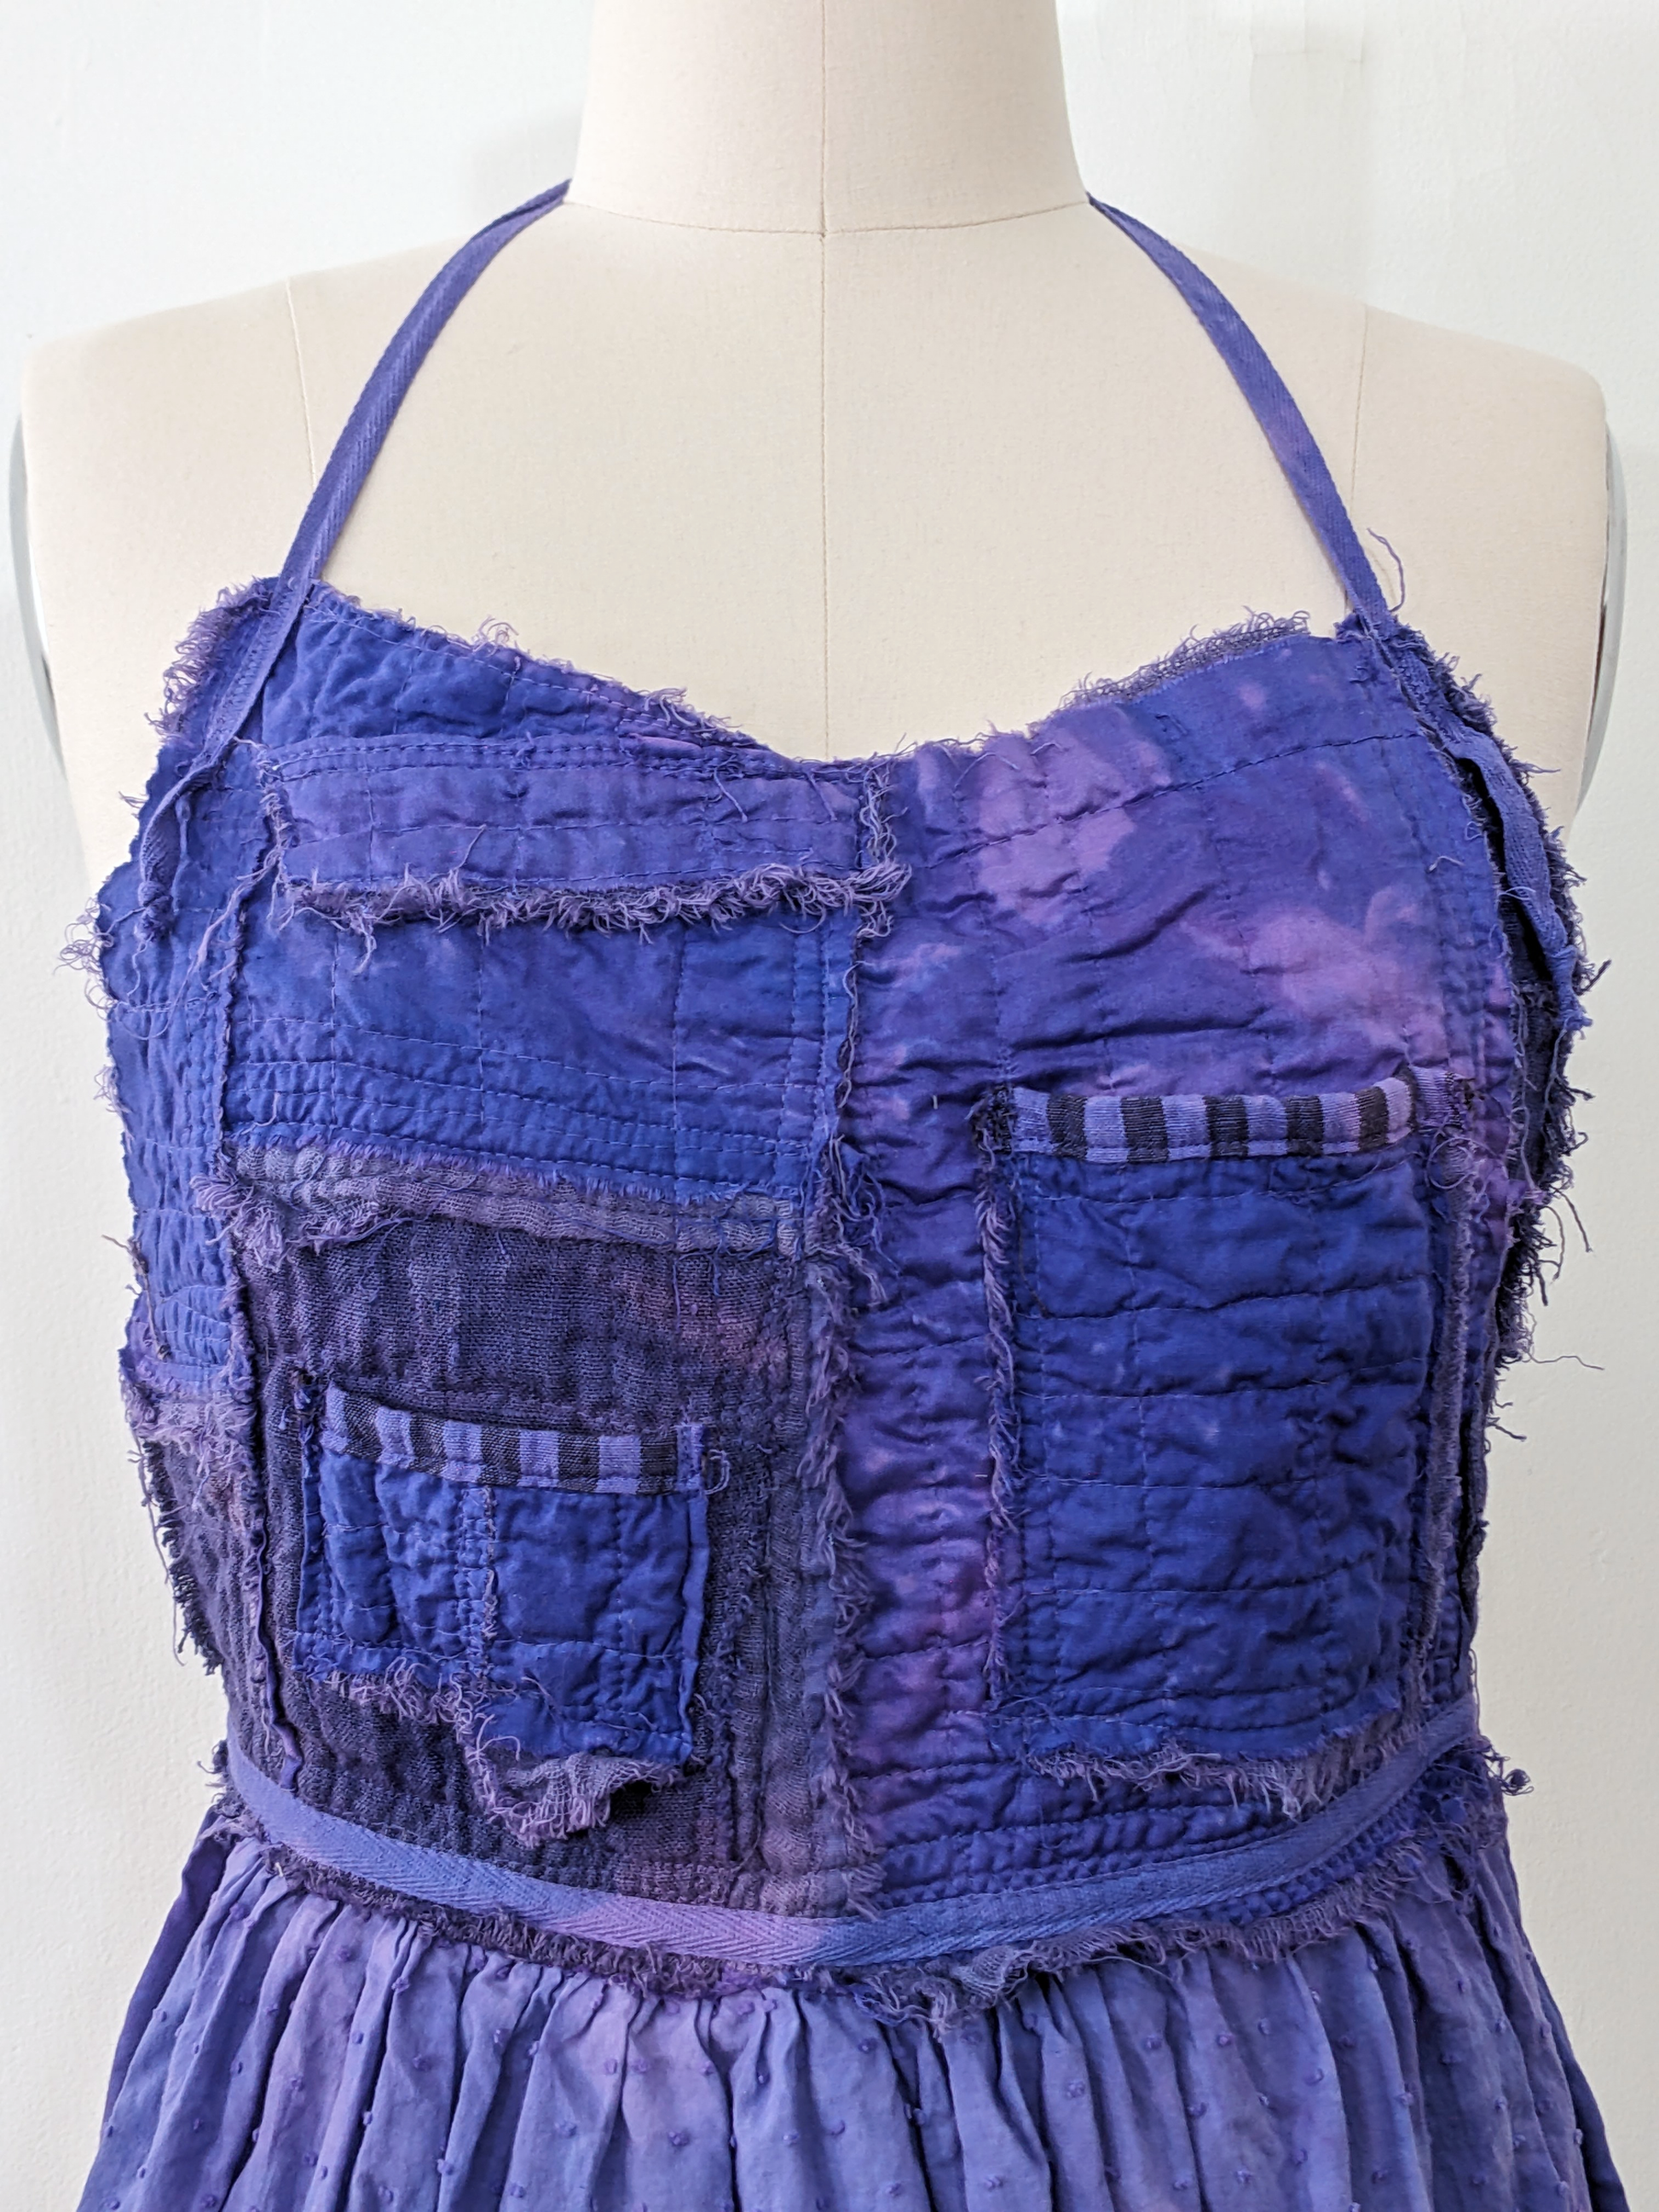 Secret Lentil purple apron, top detail